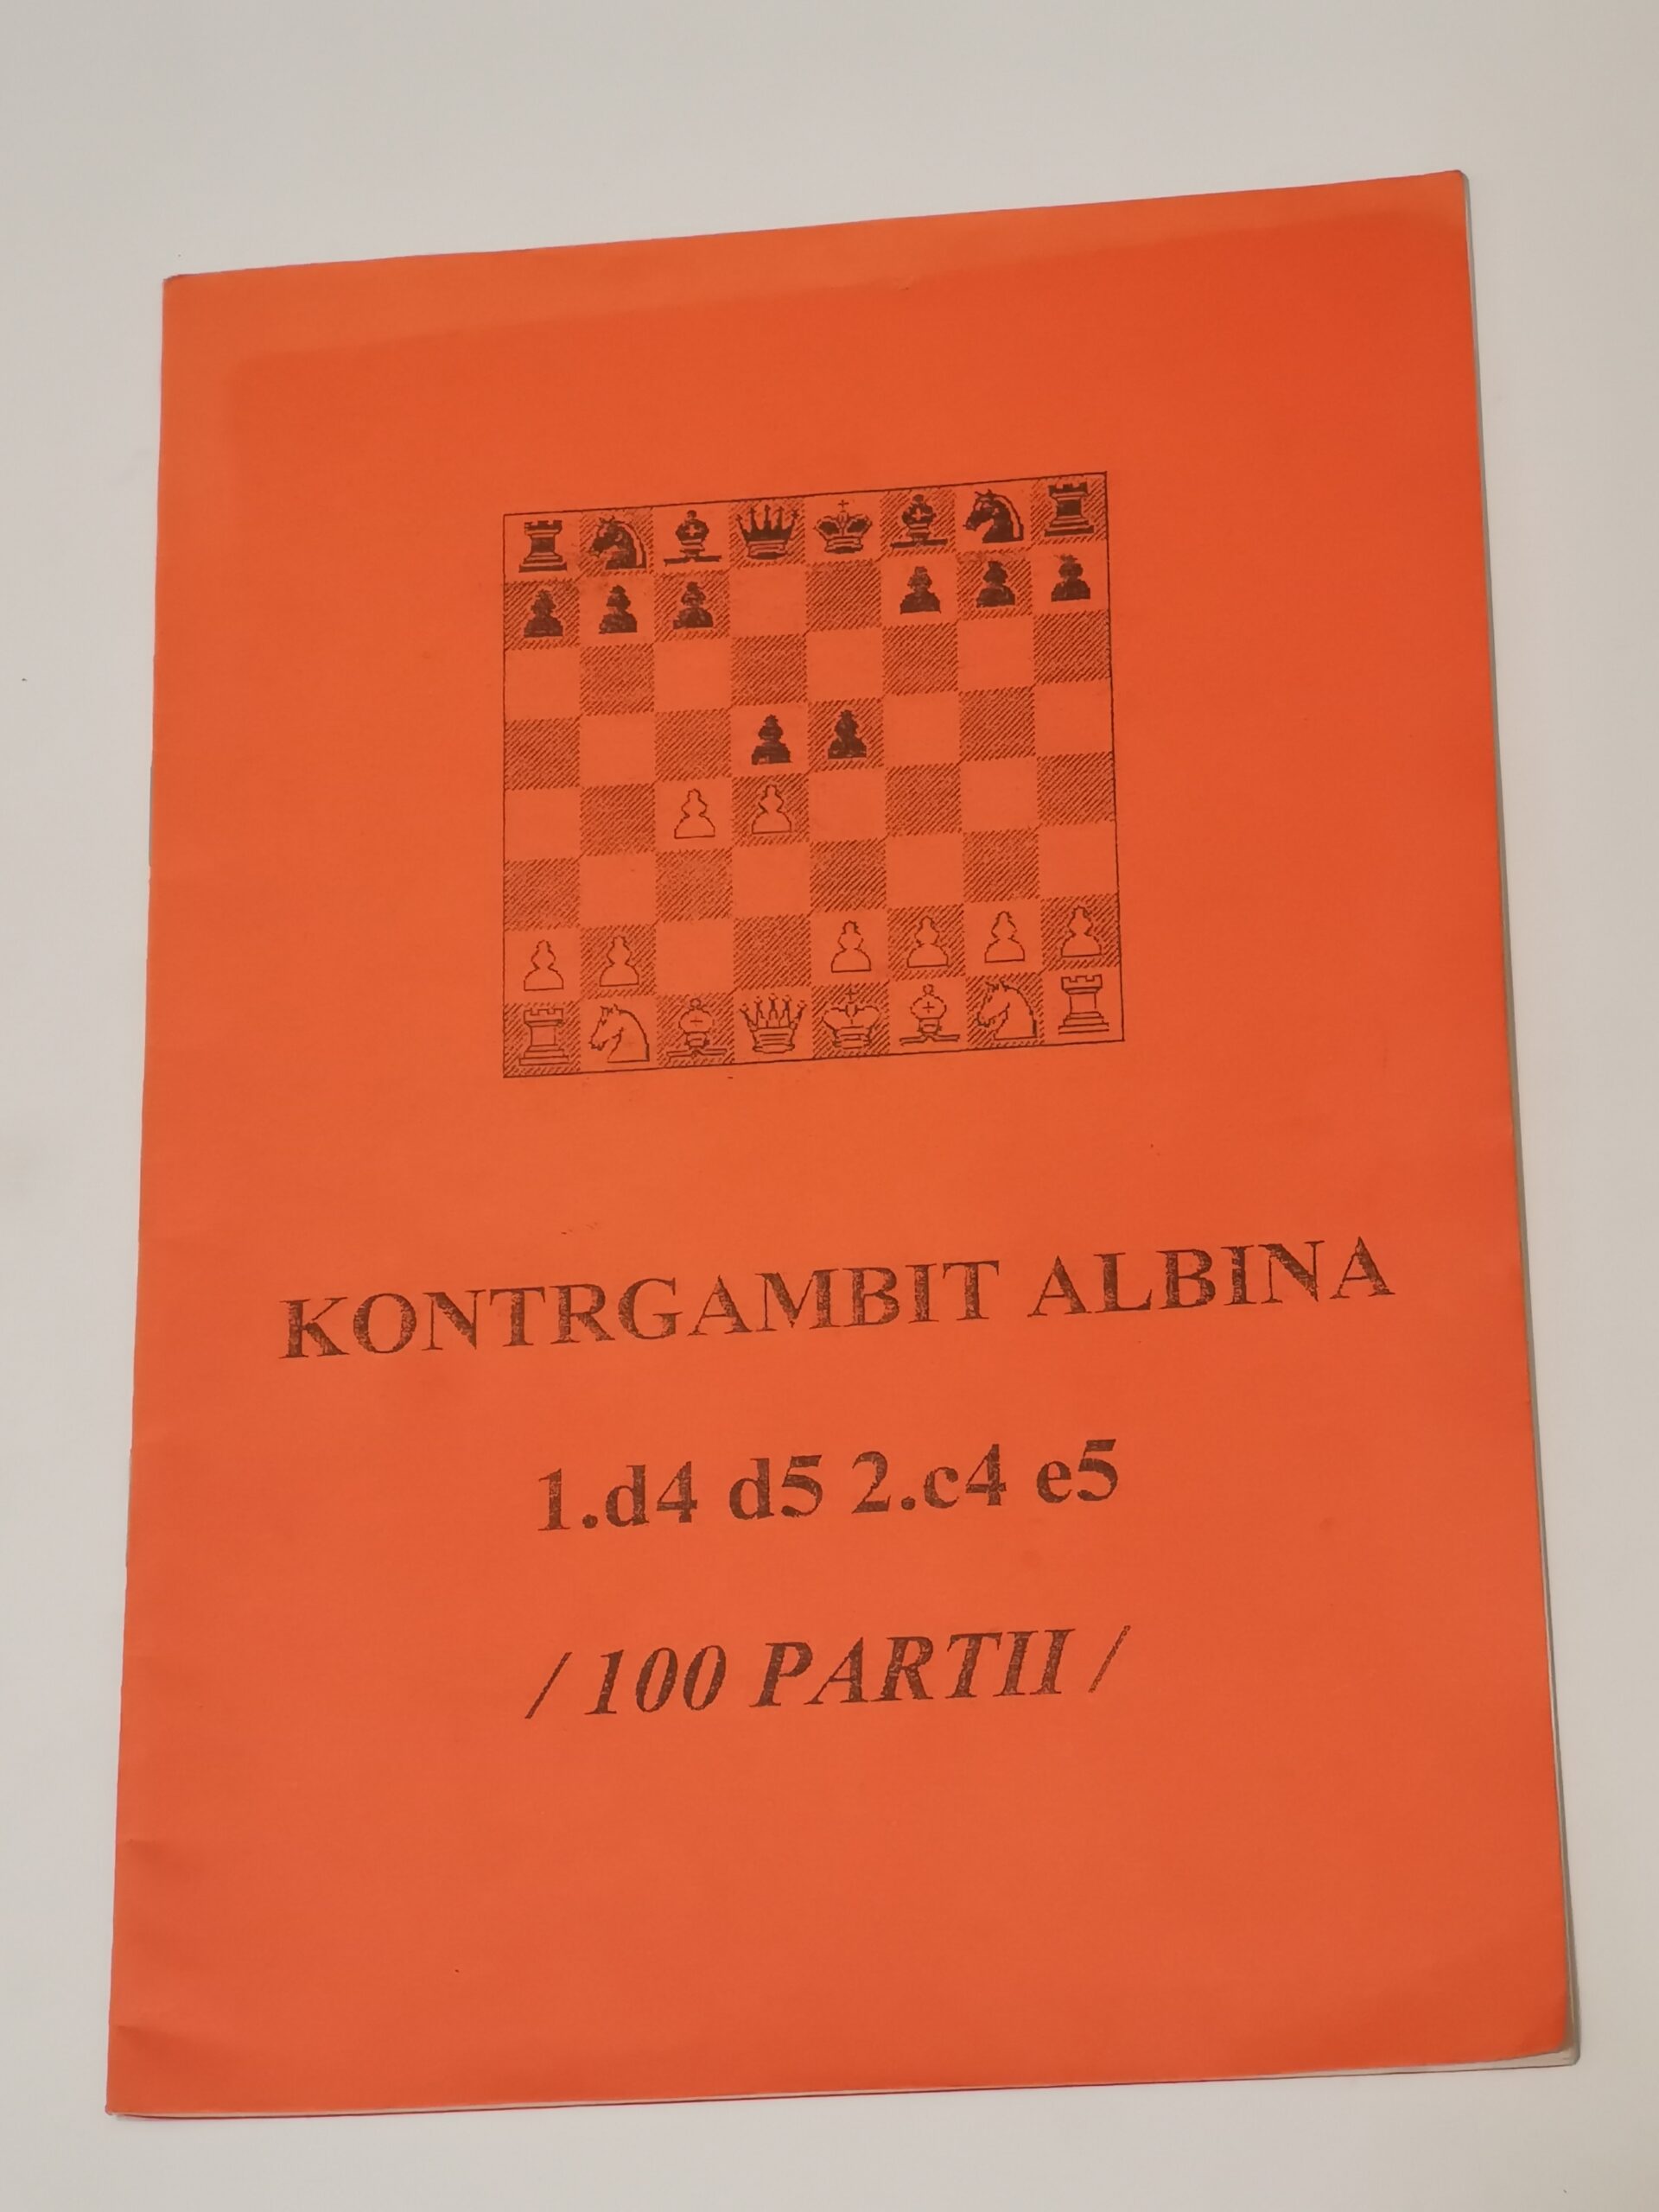 517# Broszura – Kontrgambit Albina 1.d4 d5 2.c4 e5 (100 partii) (A.Doniec)